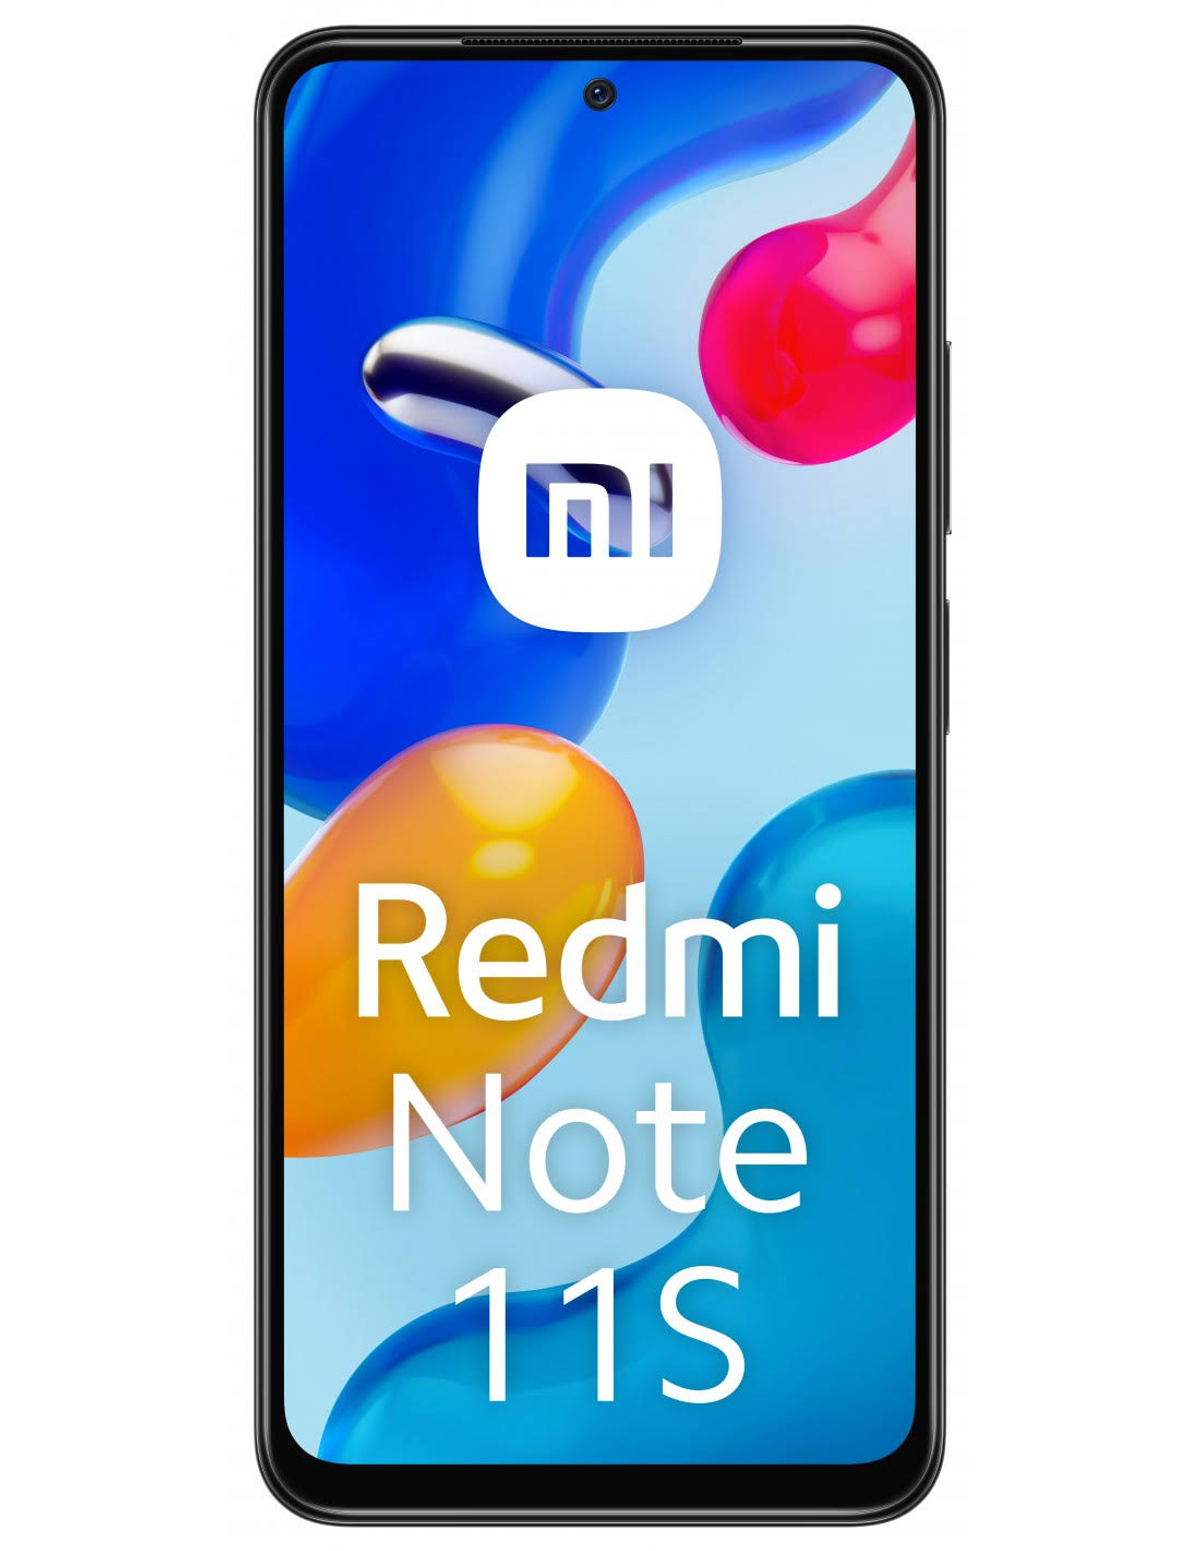 Note Redmi Dual SIM GB 11S XIAOMI Grau 6